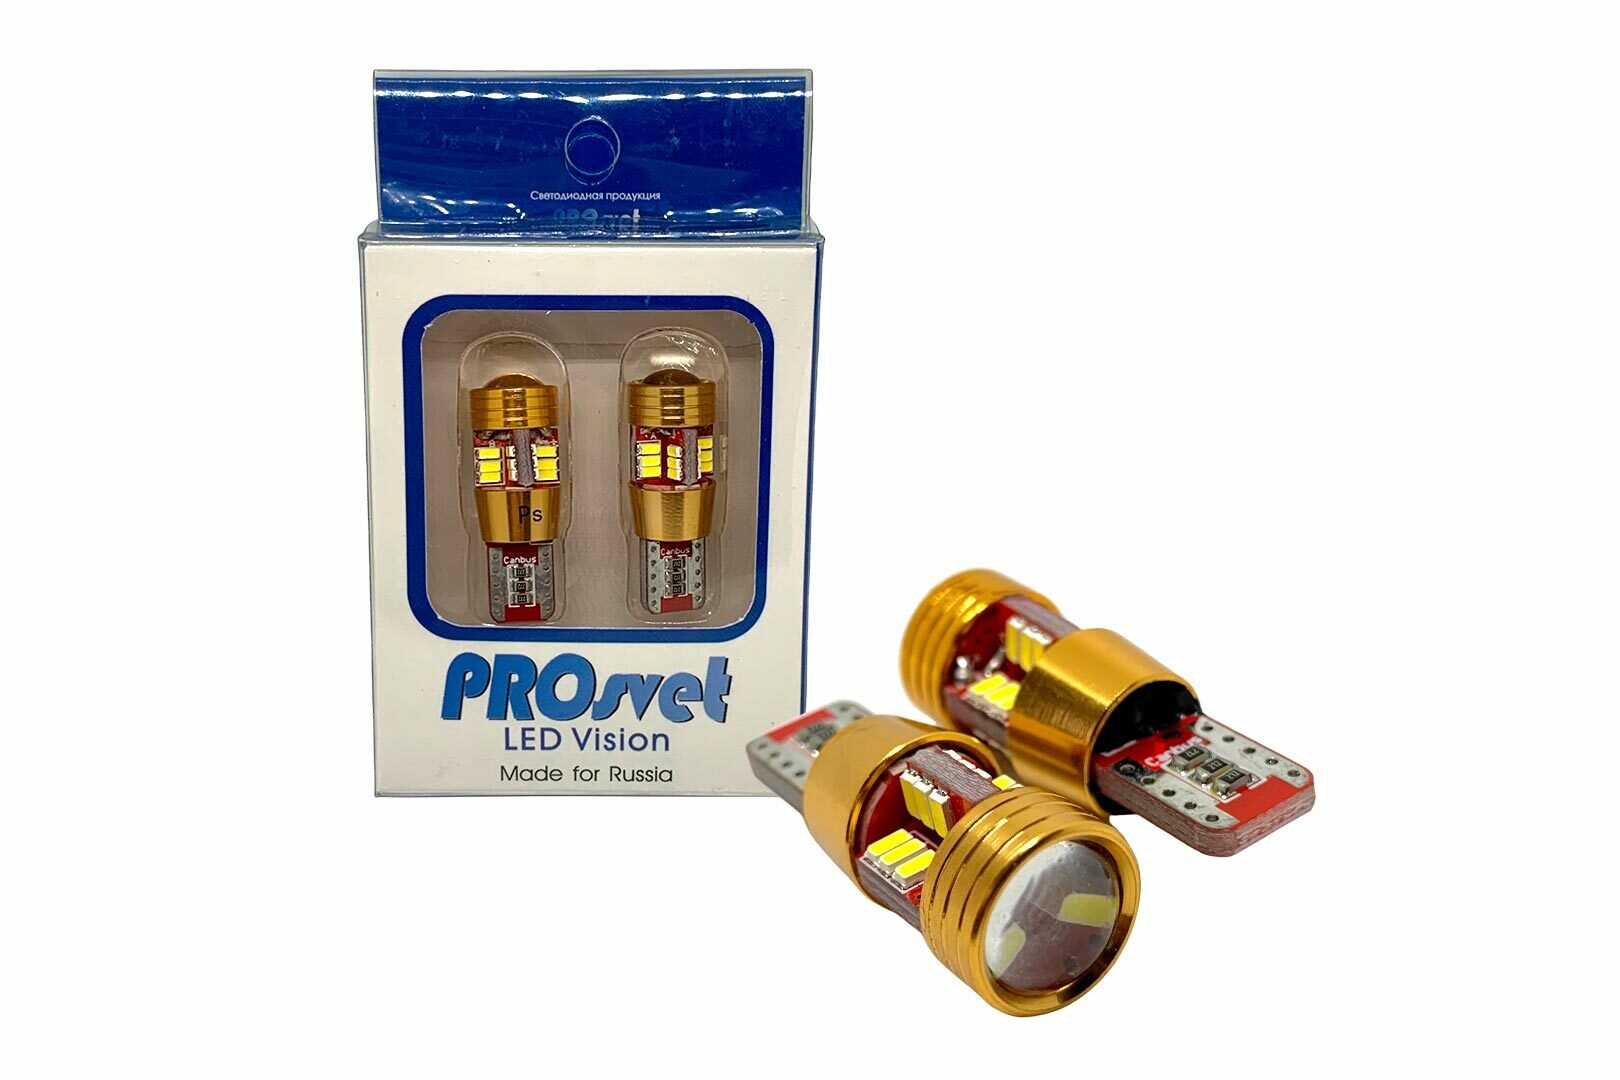 W5w светодиодные лампы для авто Prosvet PREMIUM / габаритные для авто 12V T10 4014 27 SMD CANBUS ( С обманкой ) w5w led (2 шт.)